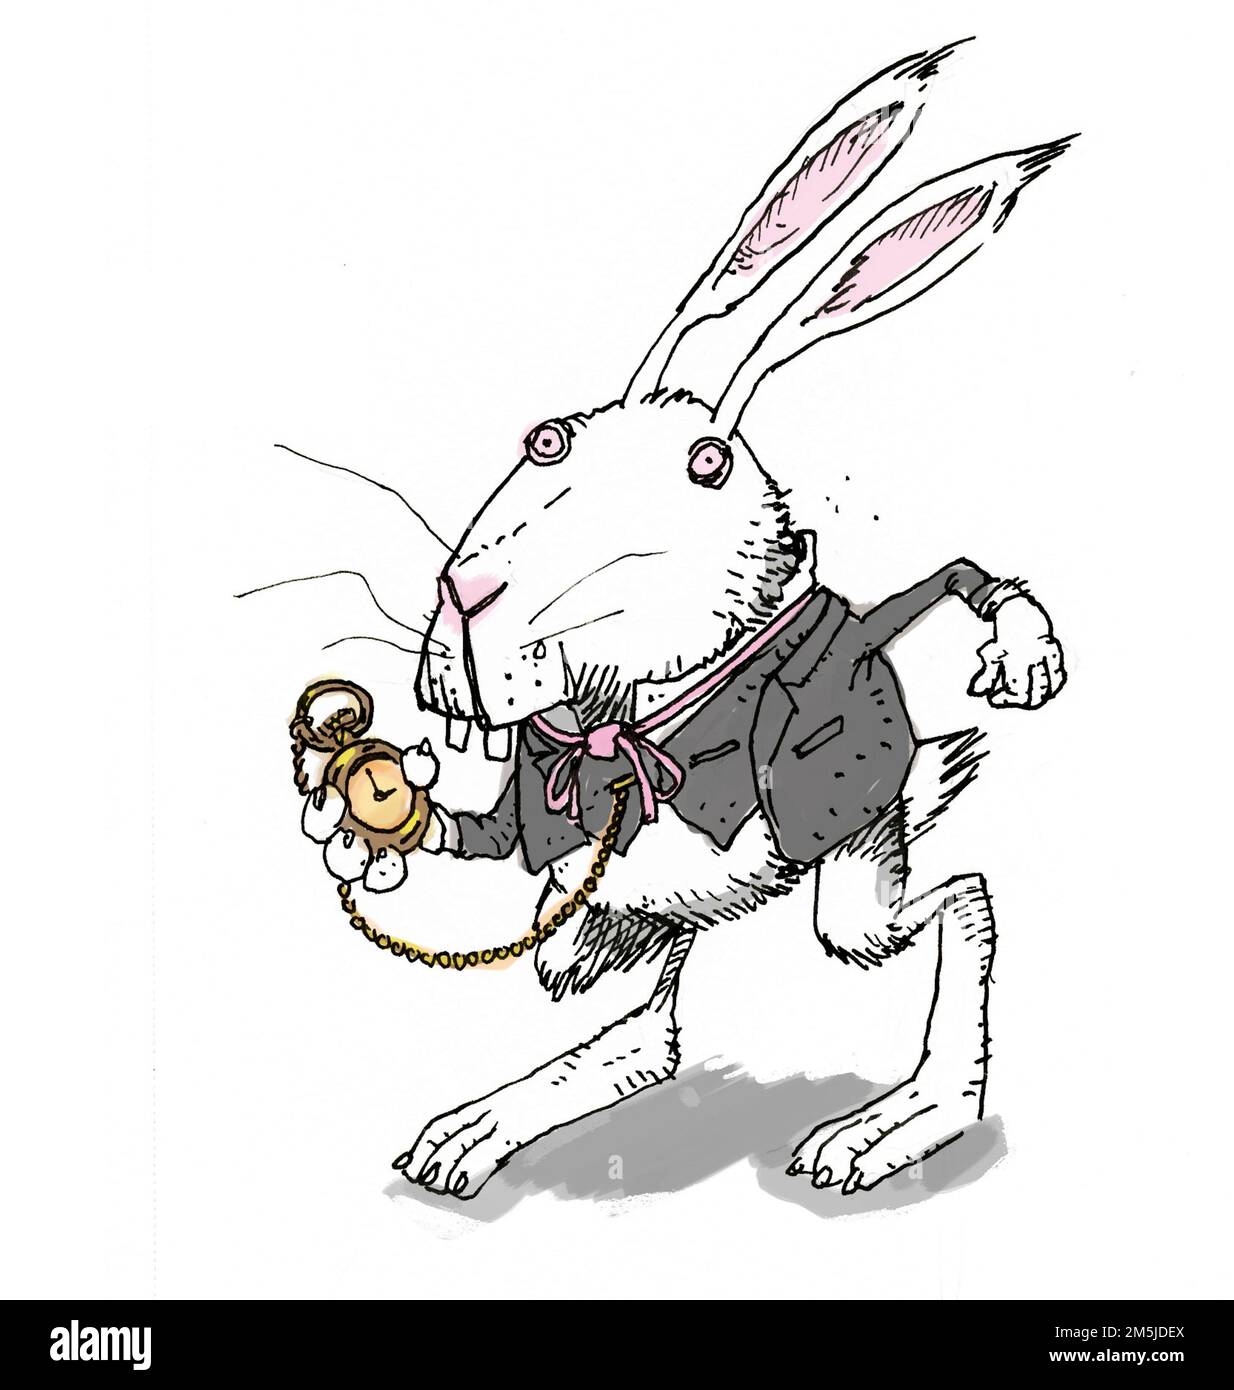 Illustrazione del personaggio antropomorfo immaginario del coniglio Bianco che sta eseguendo il libro di Alice's Adventures in Wonderland del 1865 di Lewis Carroll Foto Stock